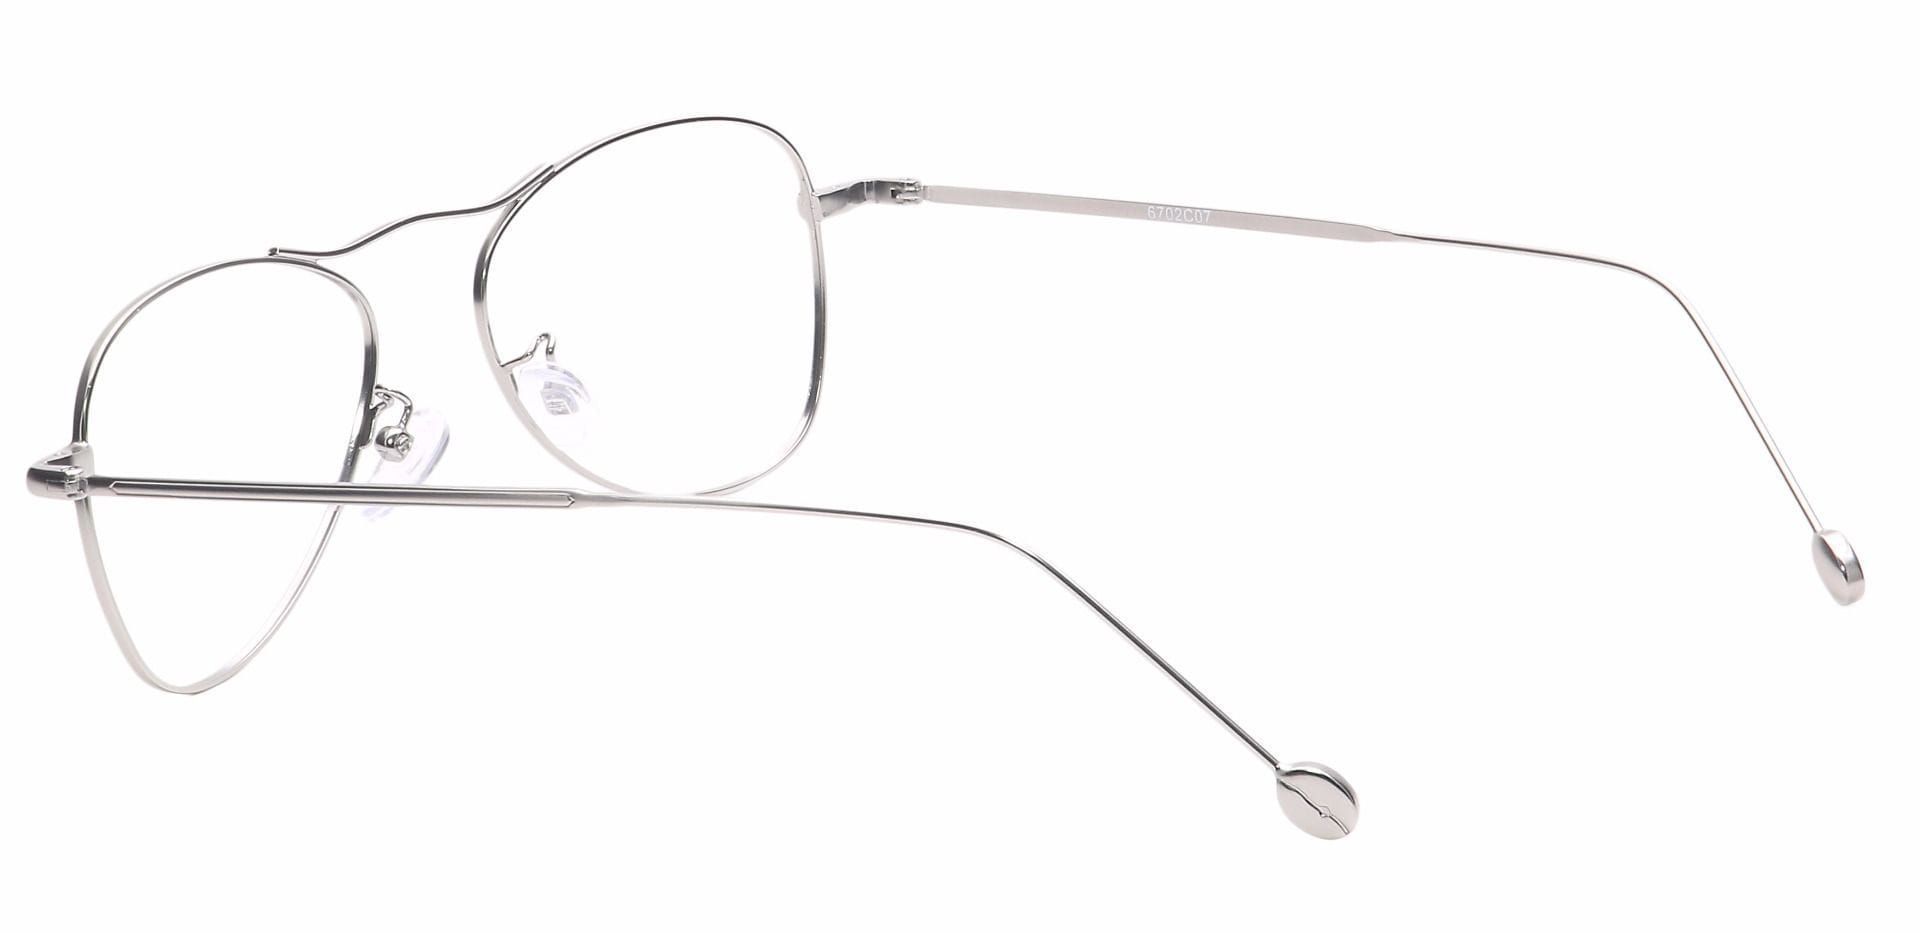 Brio Aviator Progressive Glasses - Silver